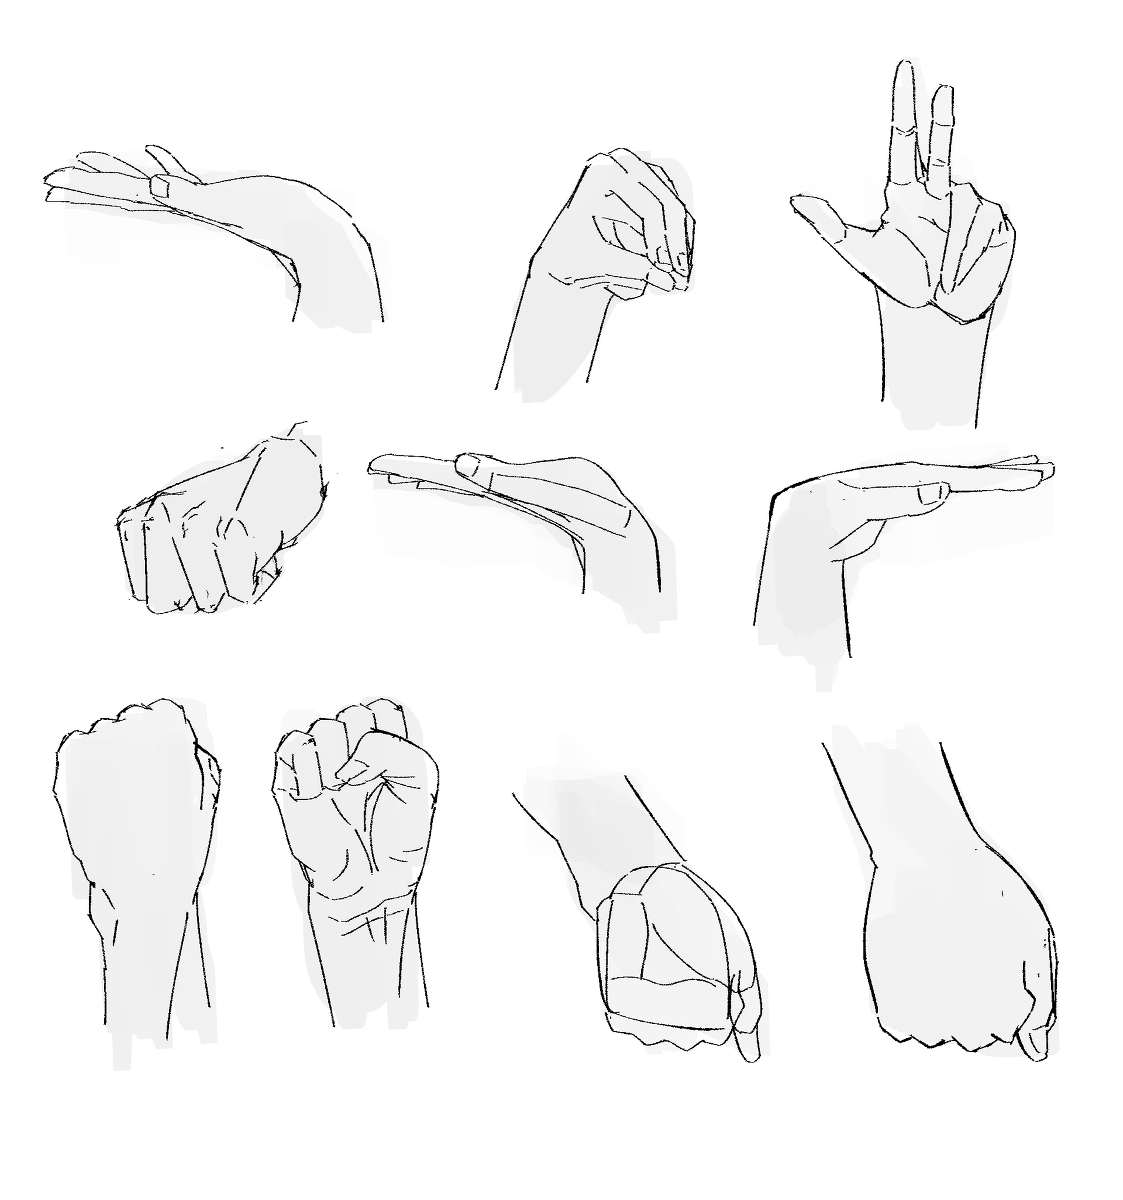 手を描く (hands drawing practice 1) #hands #fingers #anatomy #training #practice #grayscale #human #body https://t.co/7sWLR9TUIT 